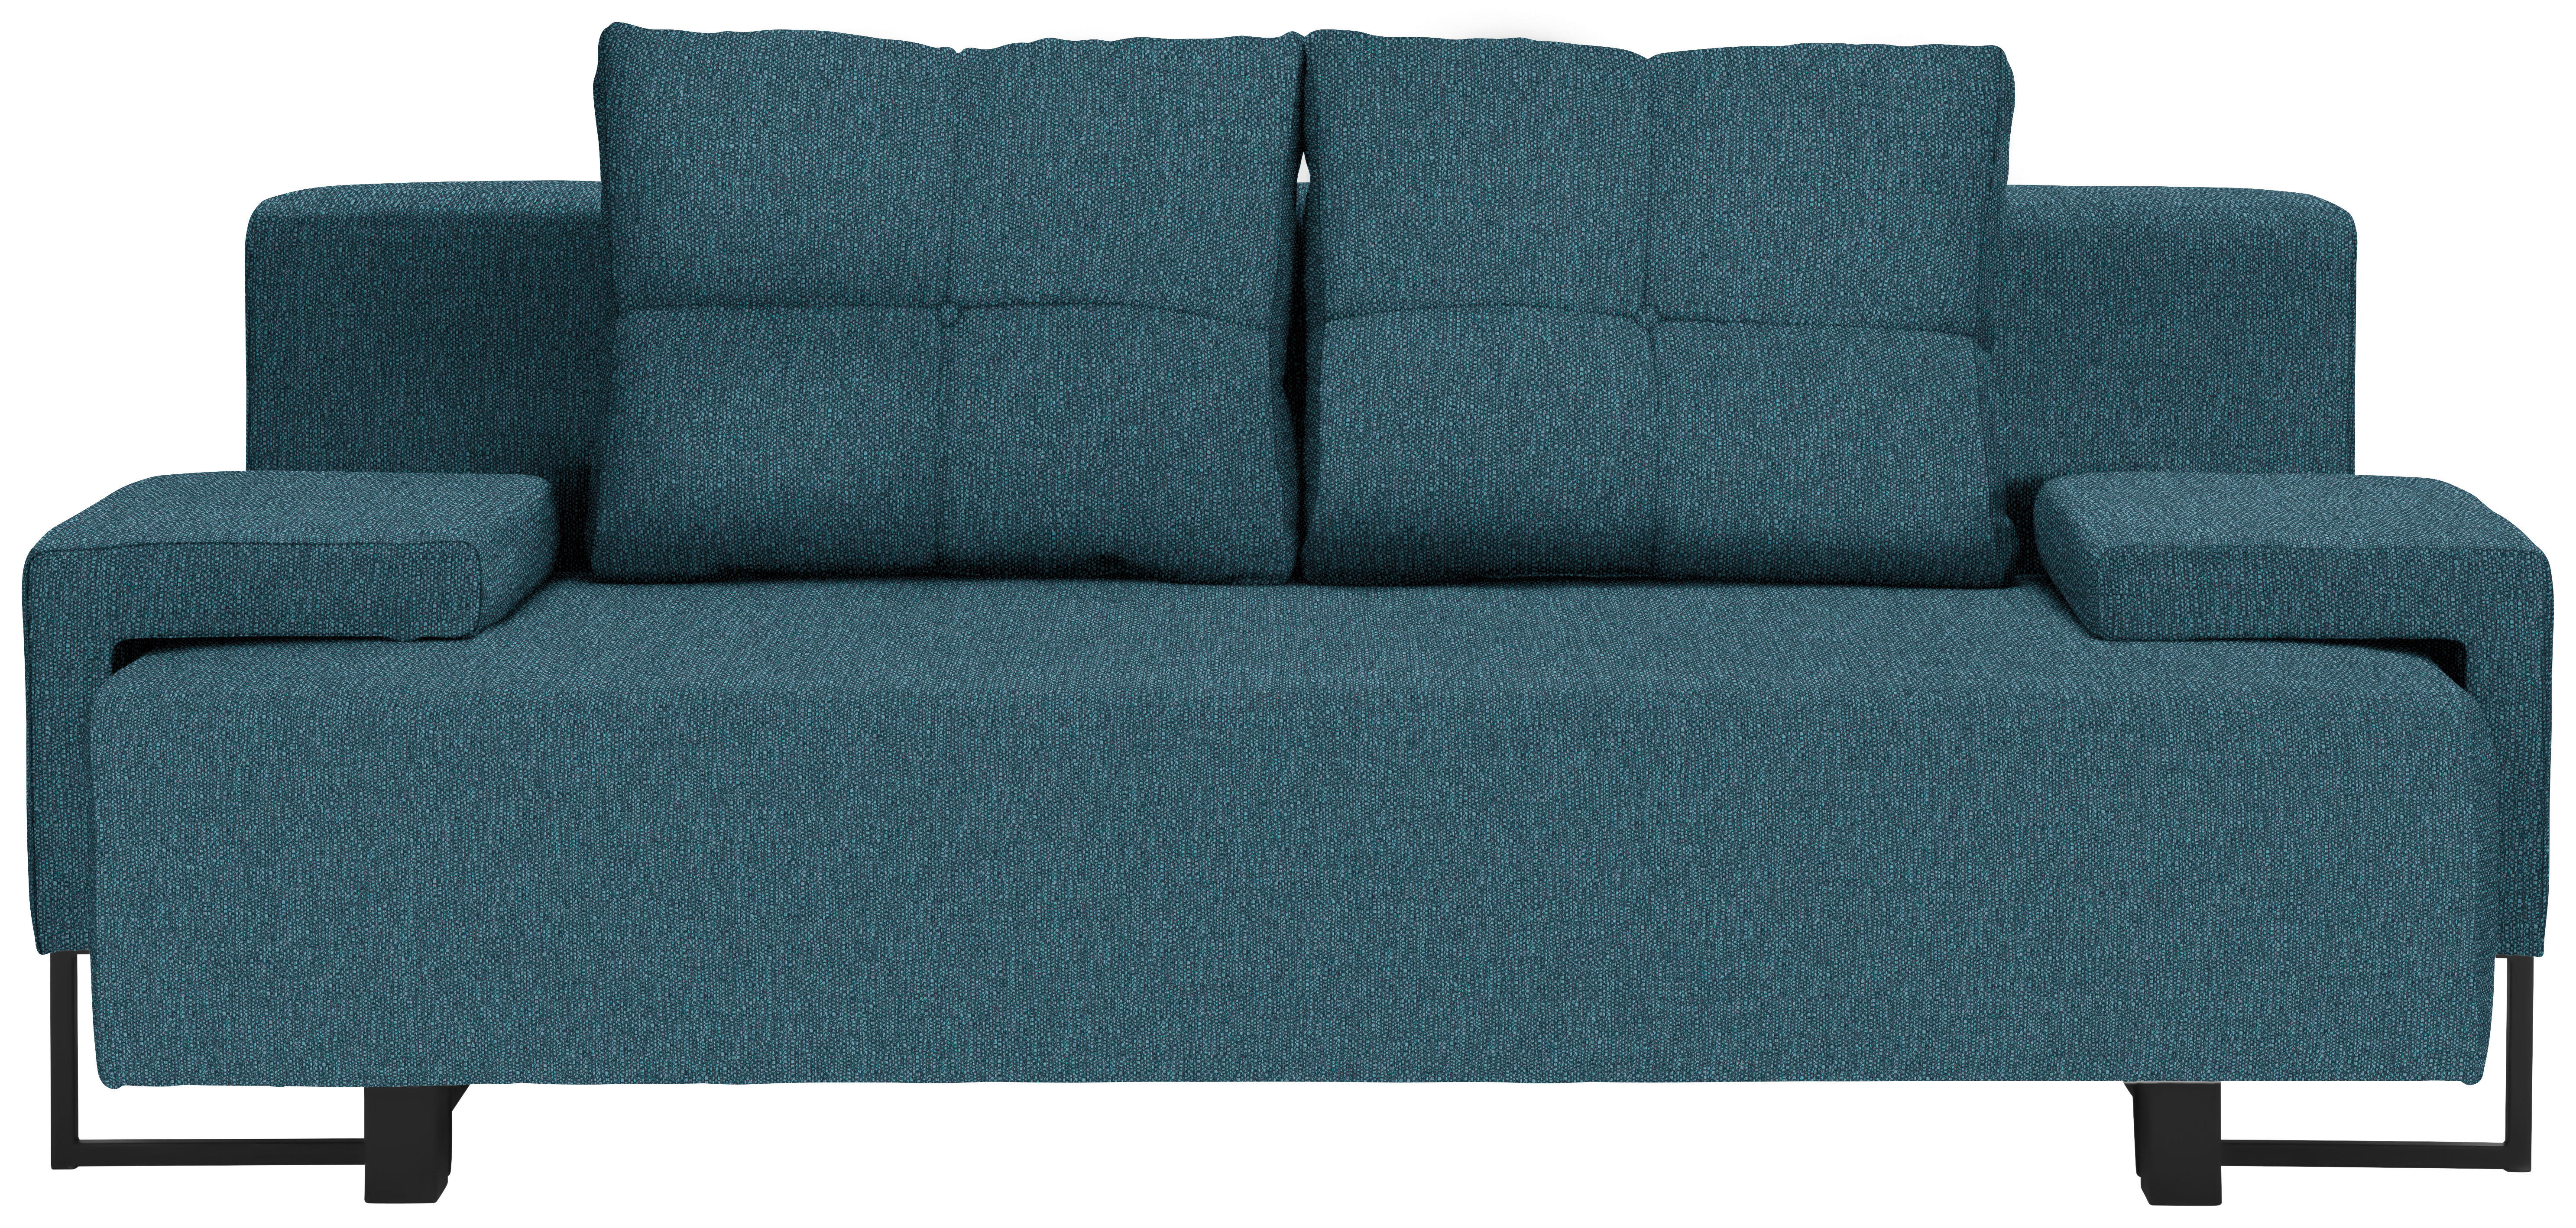 SCHLAFSOFA Webstoff Blau  - Blau/Schwarz, Design, Textil/Metall (207/76-90/91cm) - Carryhome